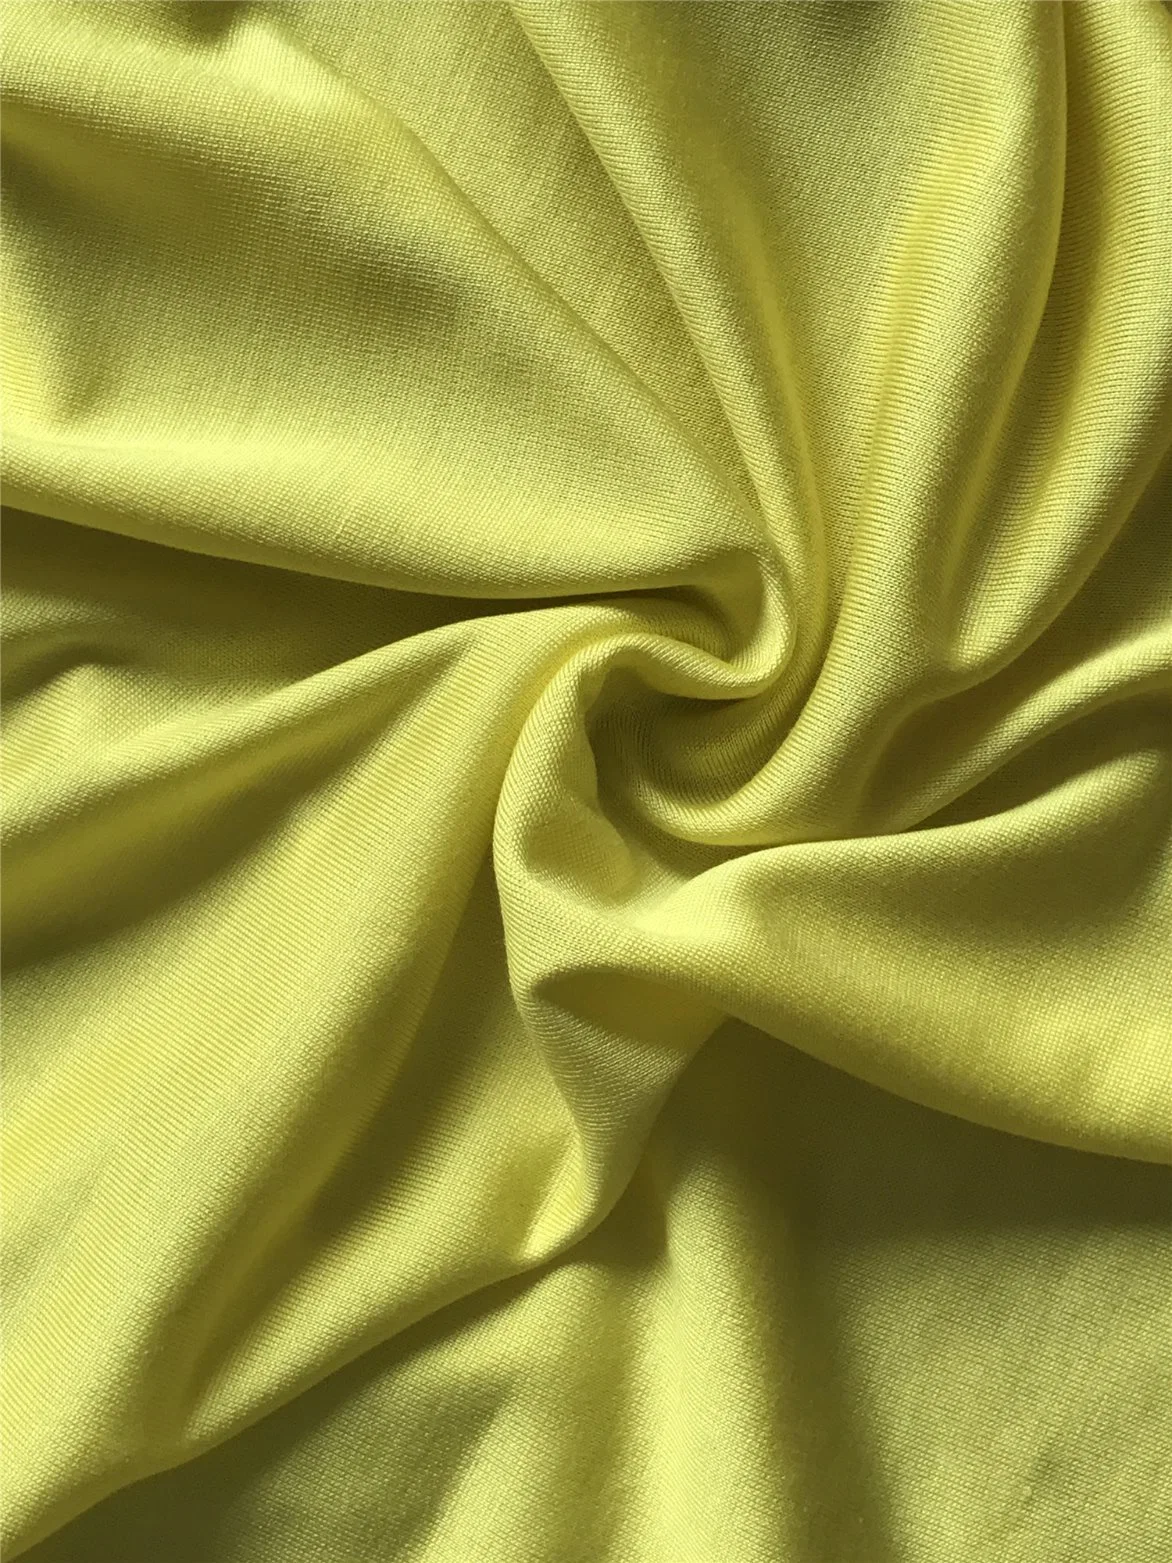 Silk/Wool Single Jersey Fabric, Knits Fabric, Single Jersey, Interlock, Rib